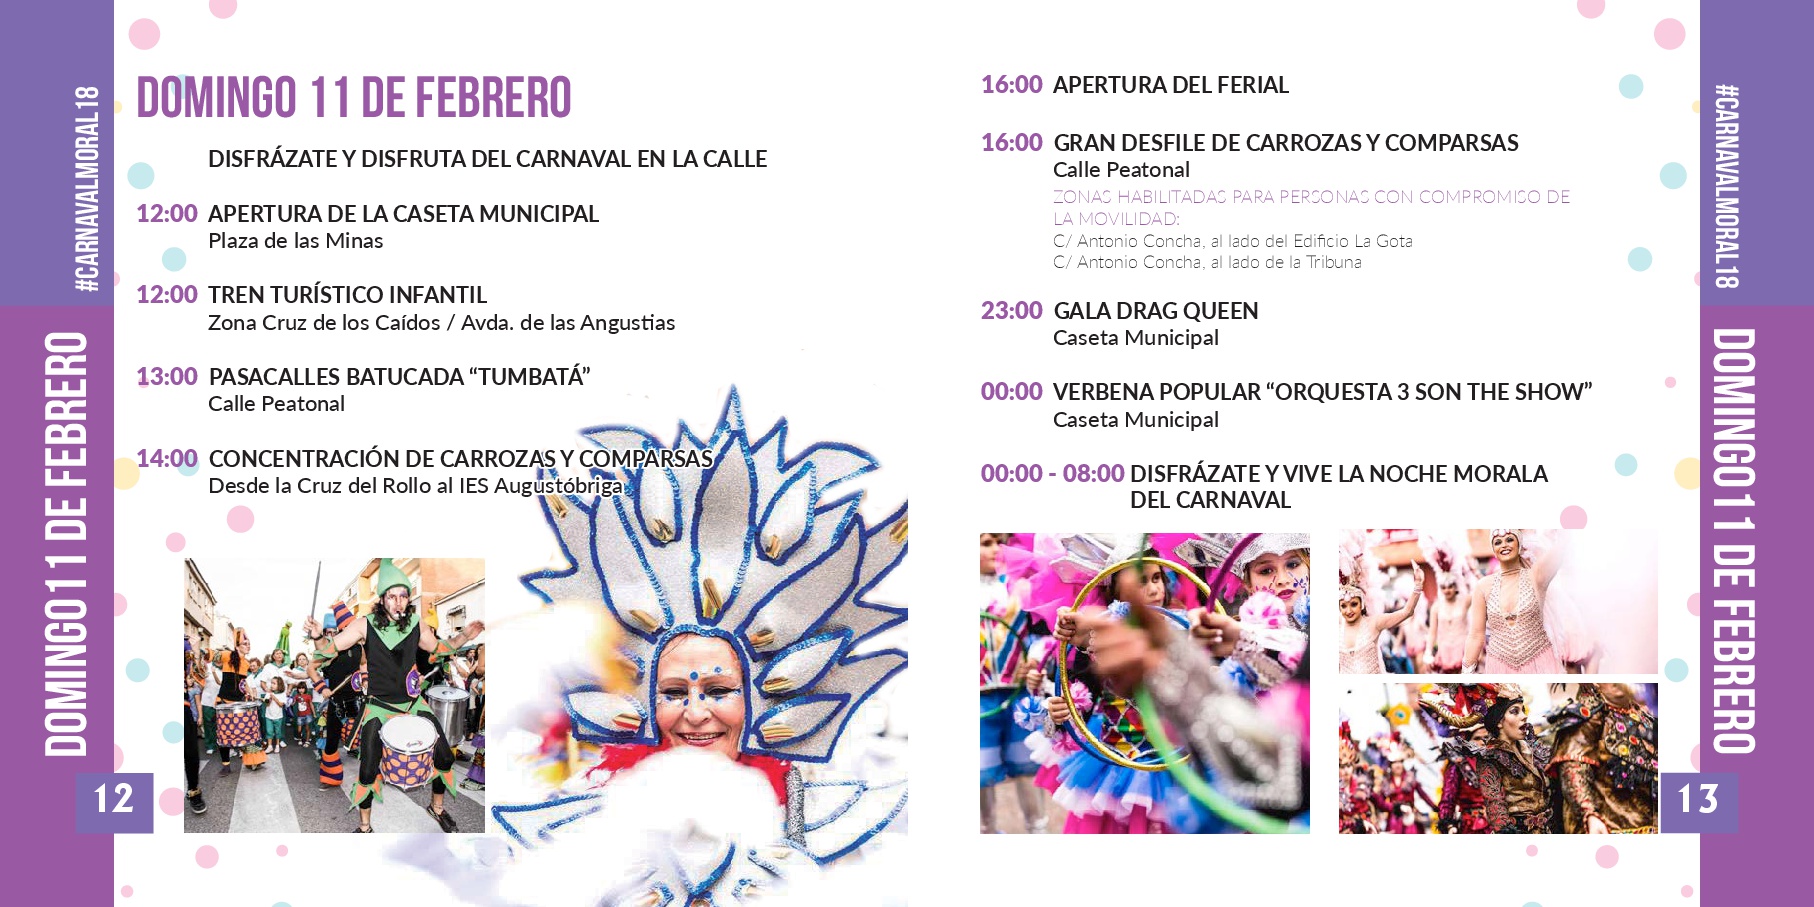 Carnaval del Campo Arañuelo 2018 7